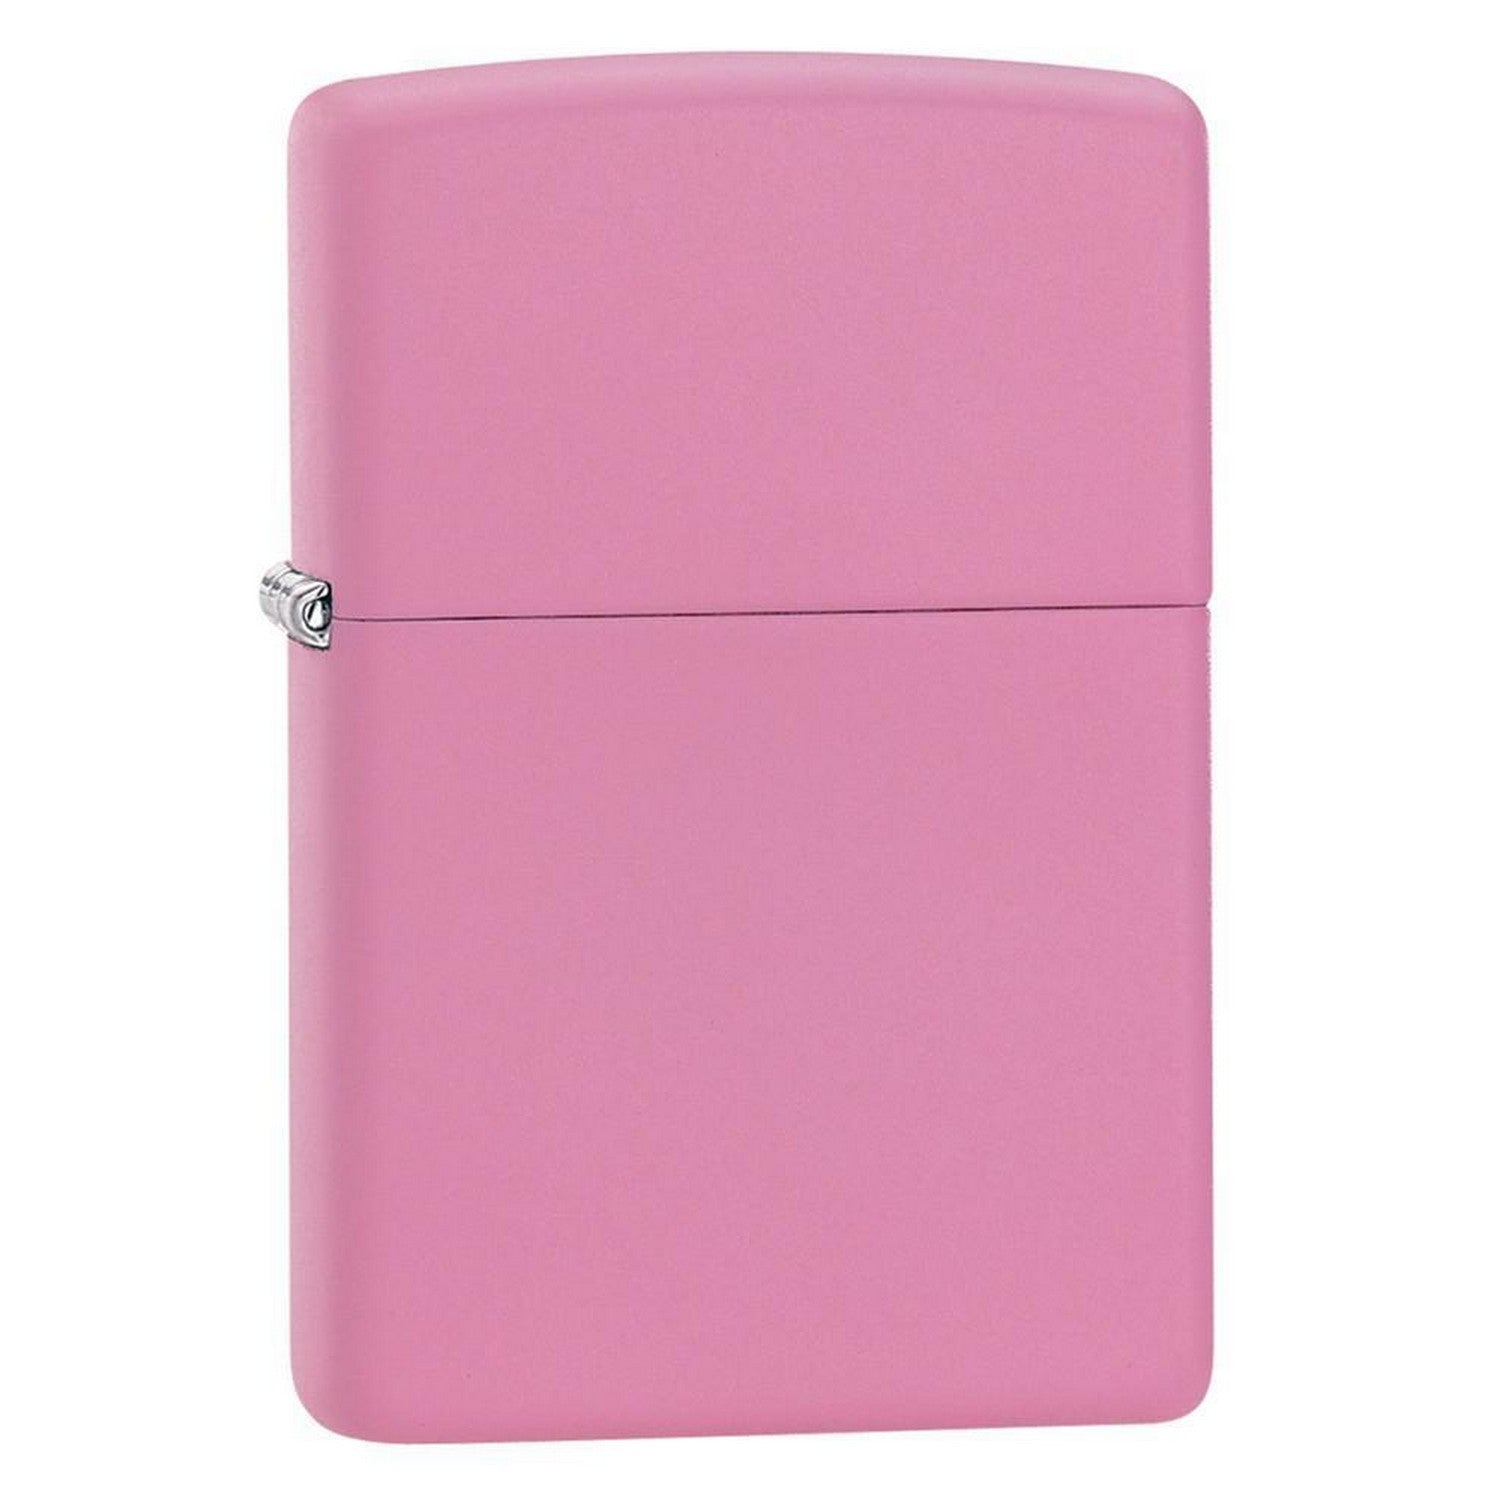 Zippo Classic Matte Pink Lighter